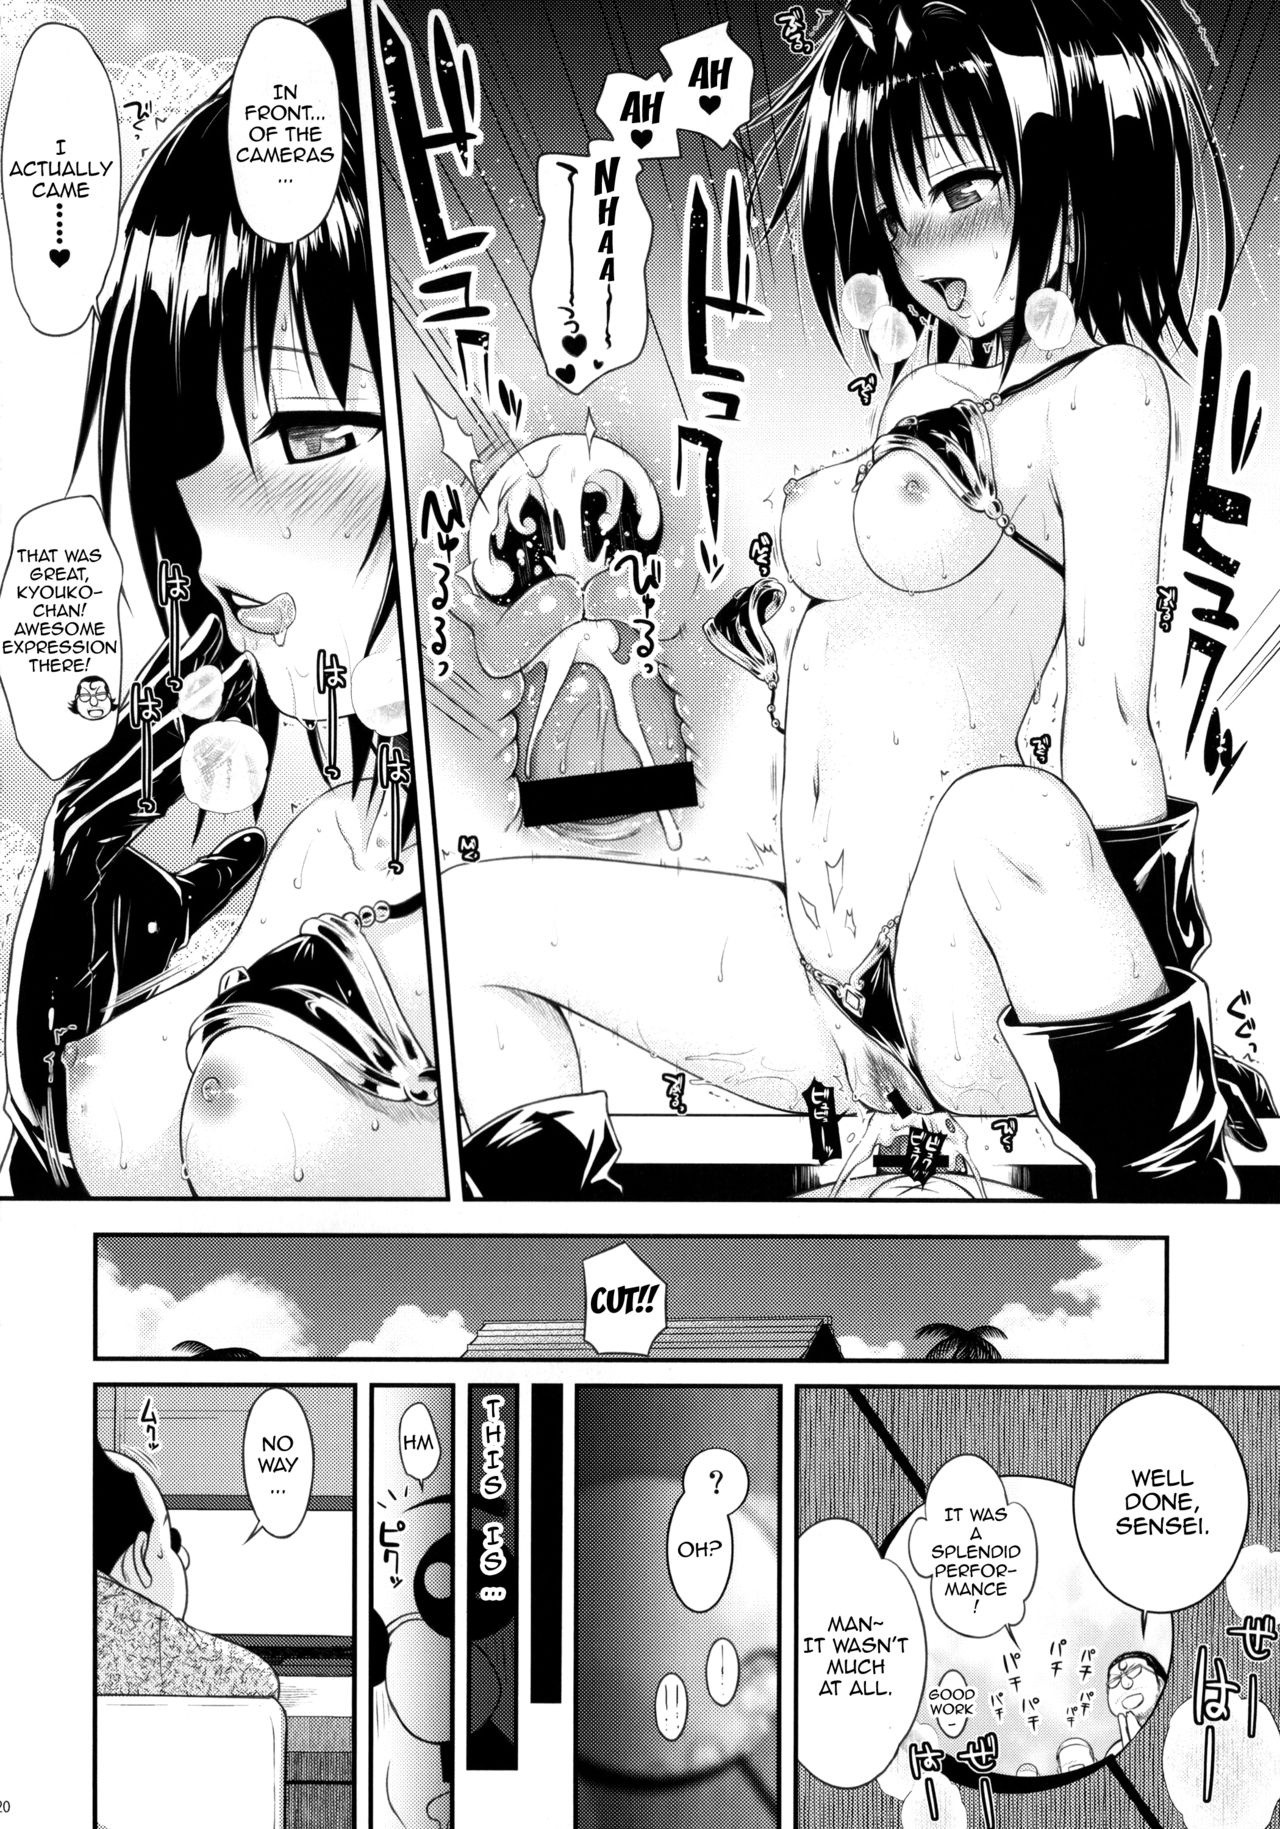 MAGICAL IV hentai manga picture 19